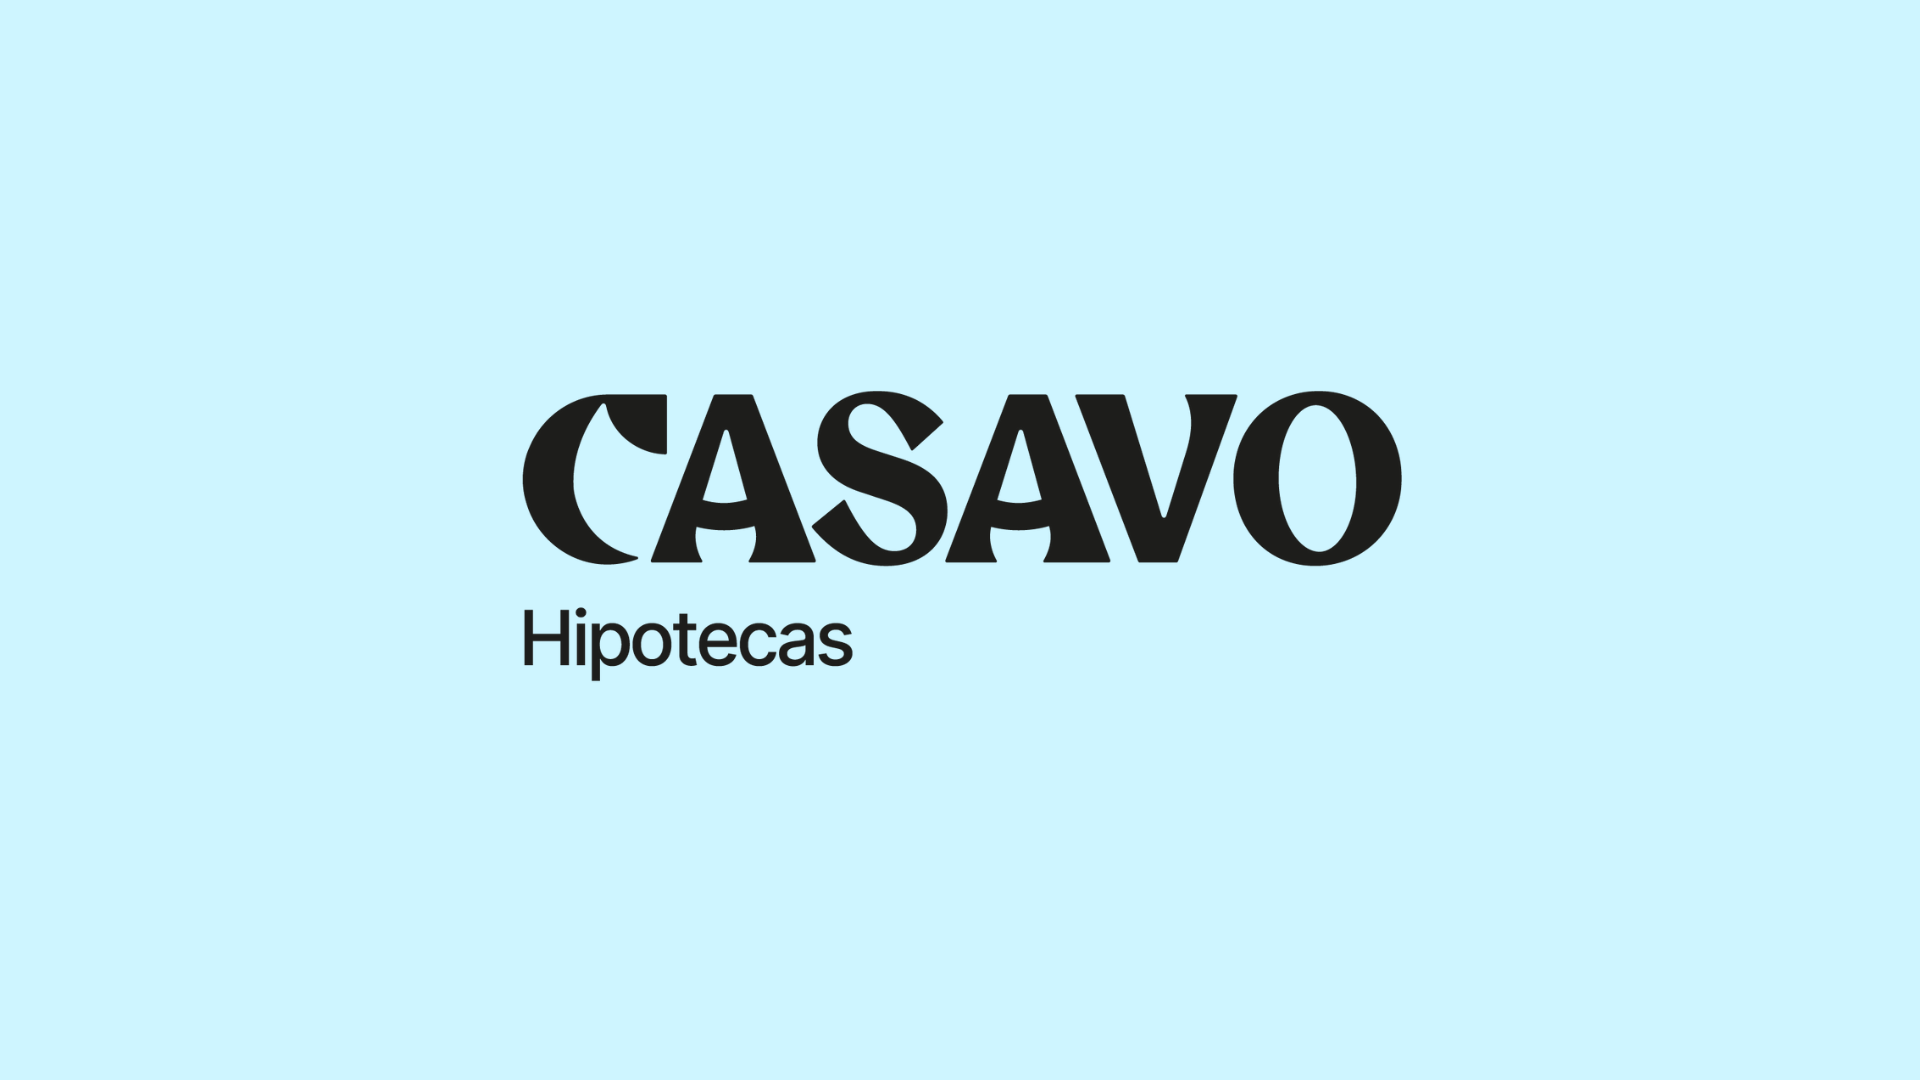 Casavo lanza su nuevo servicio hipotecario